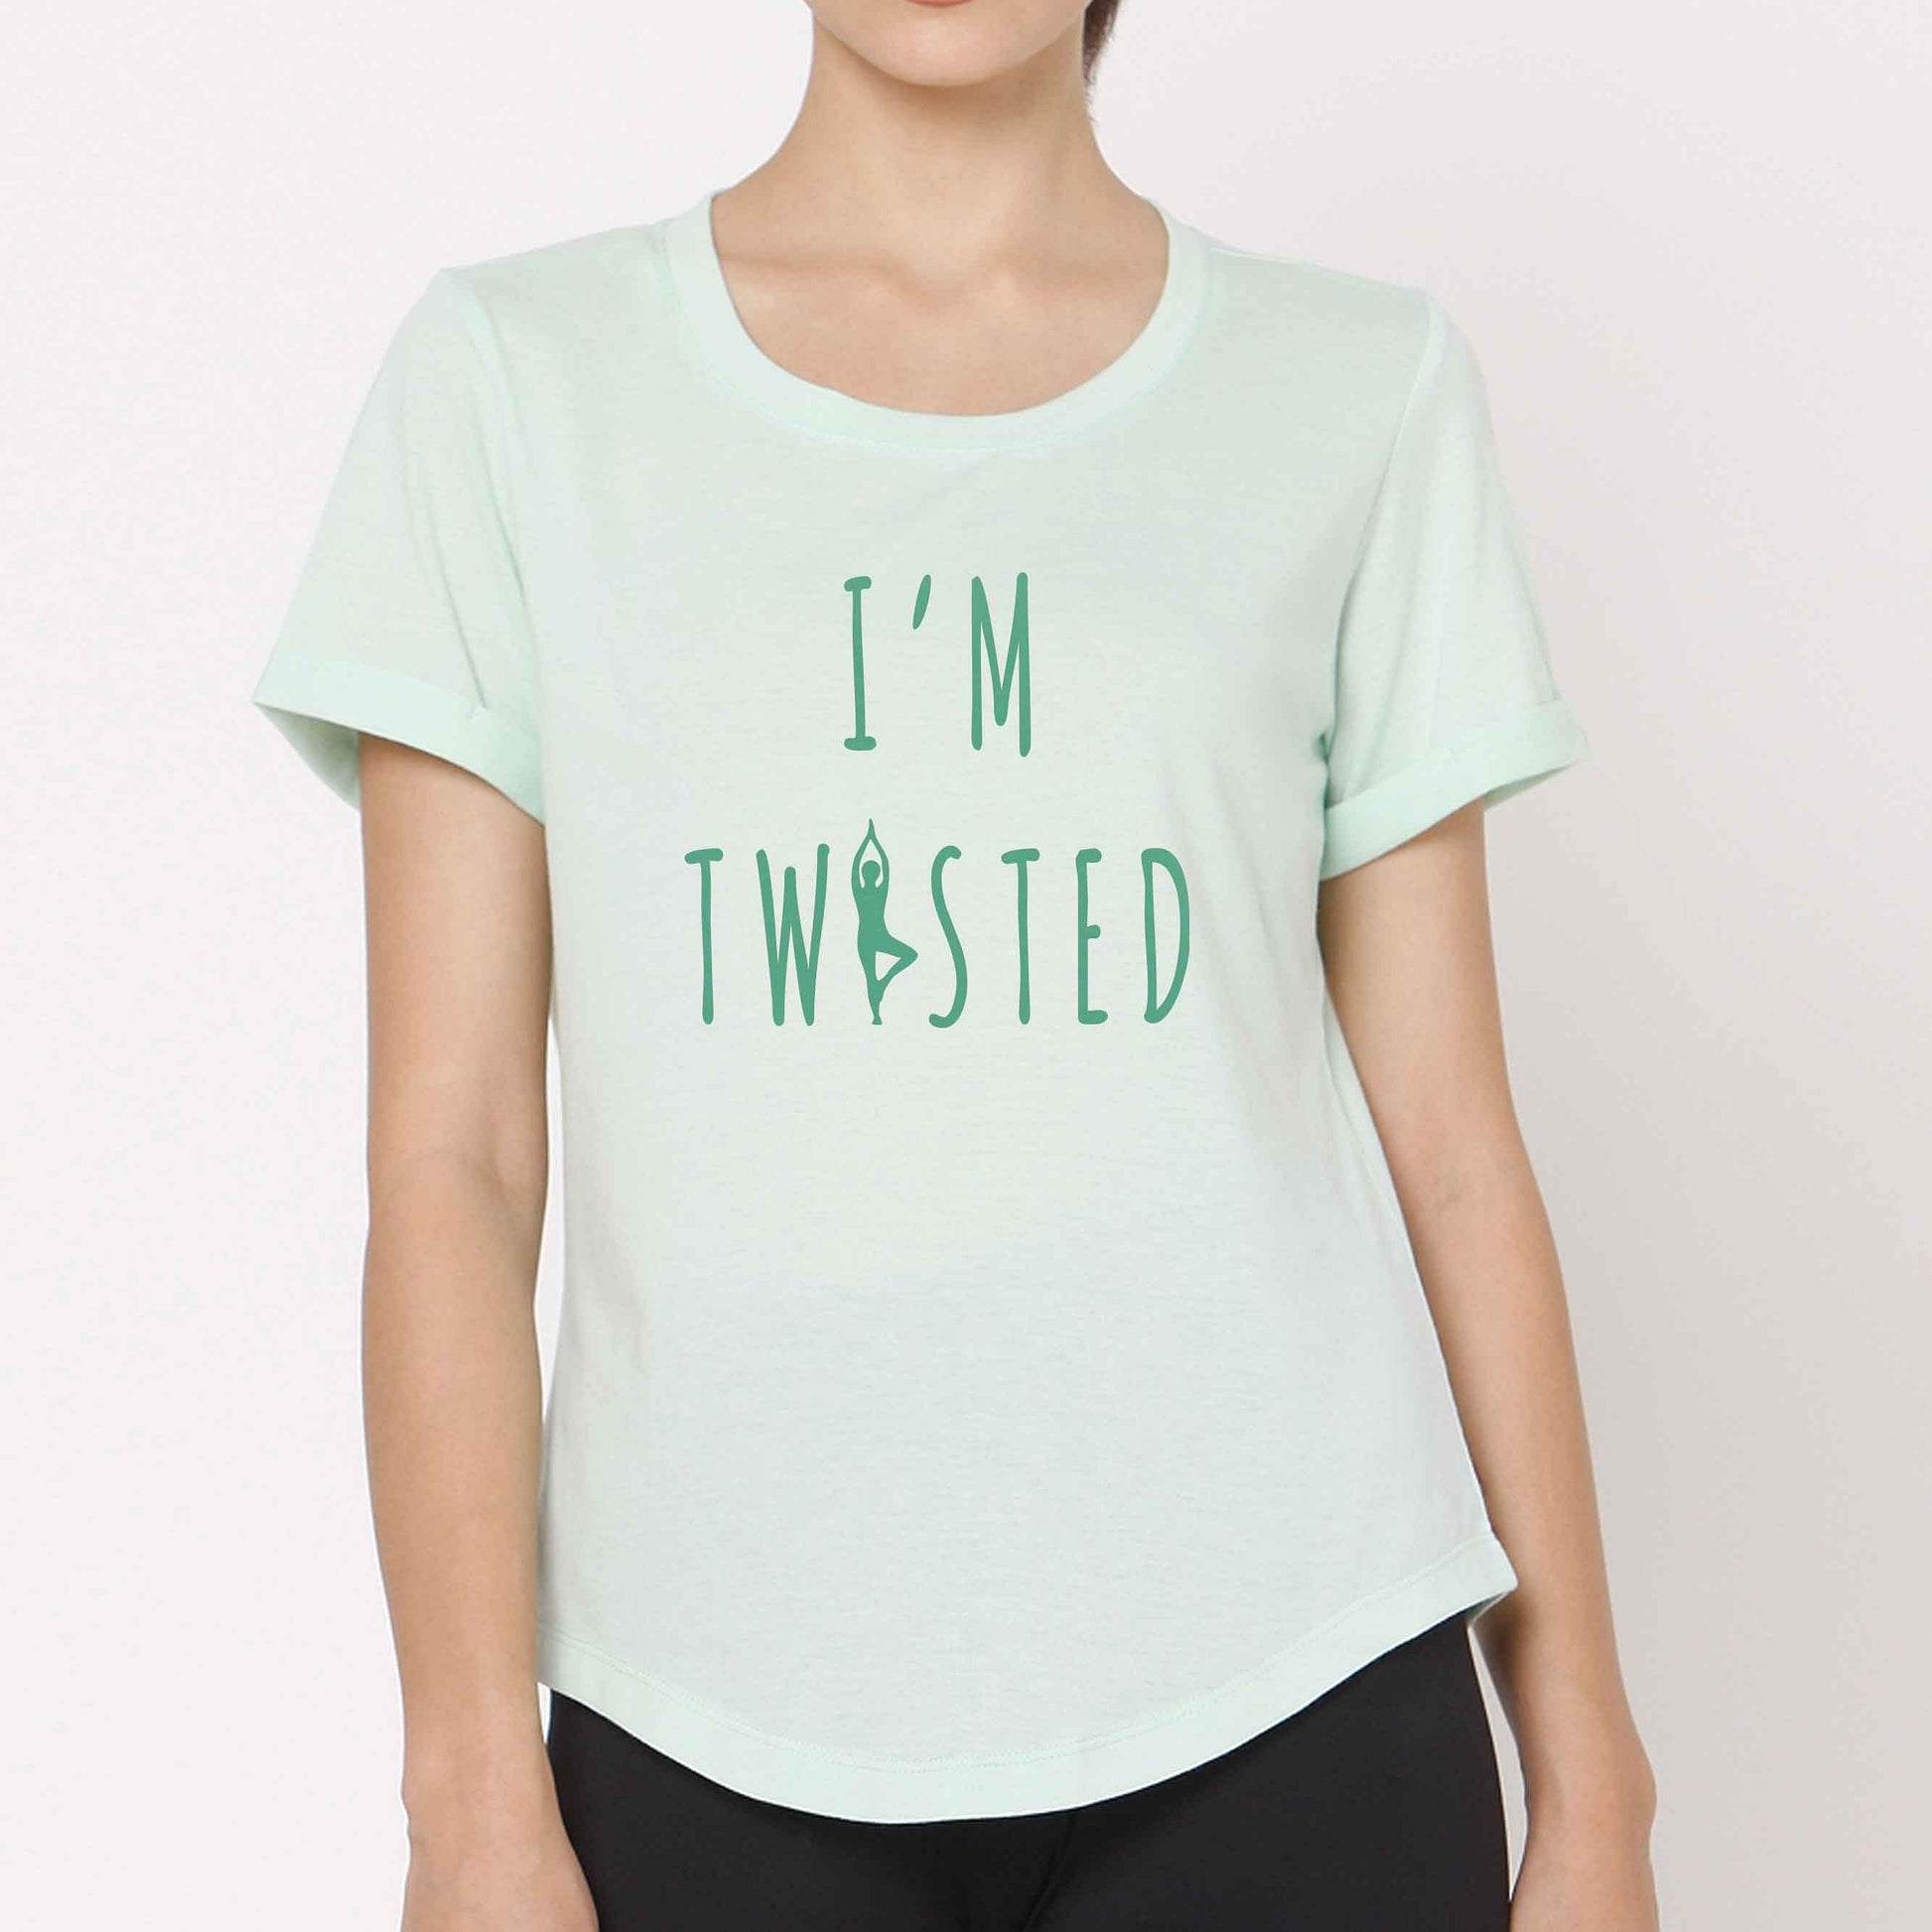 Nutcase yoga tshirts funny tees  - I'm Twisted Nutcase